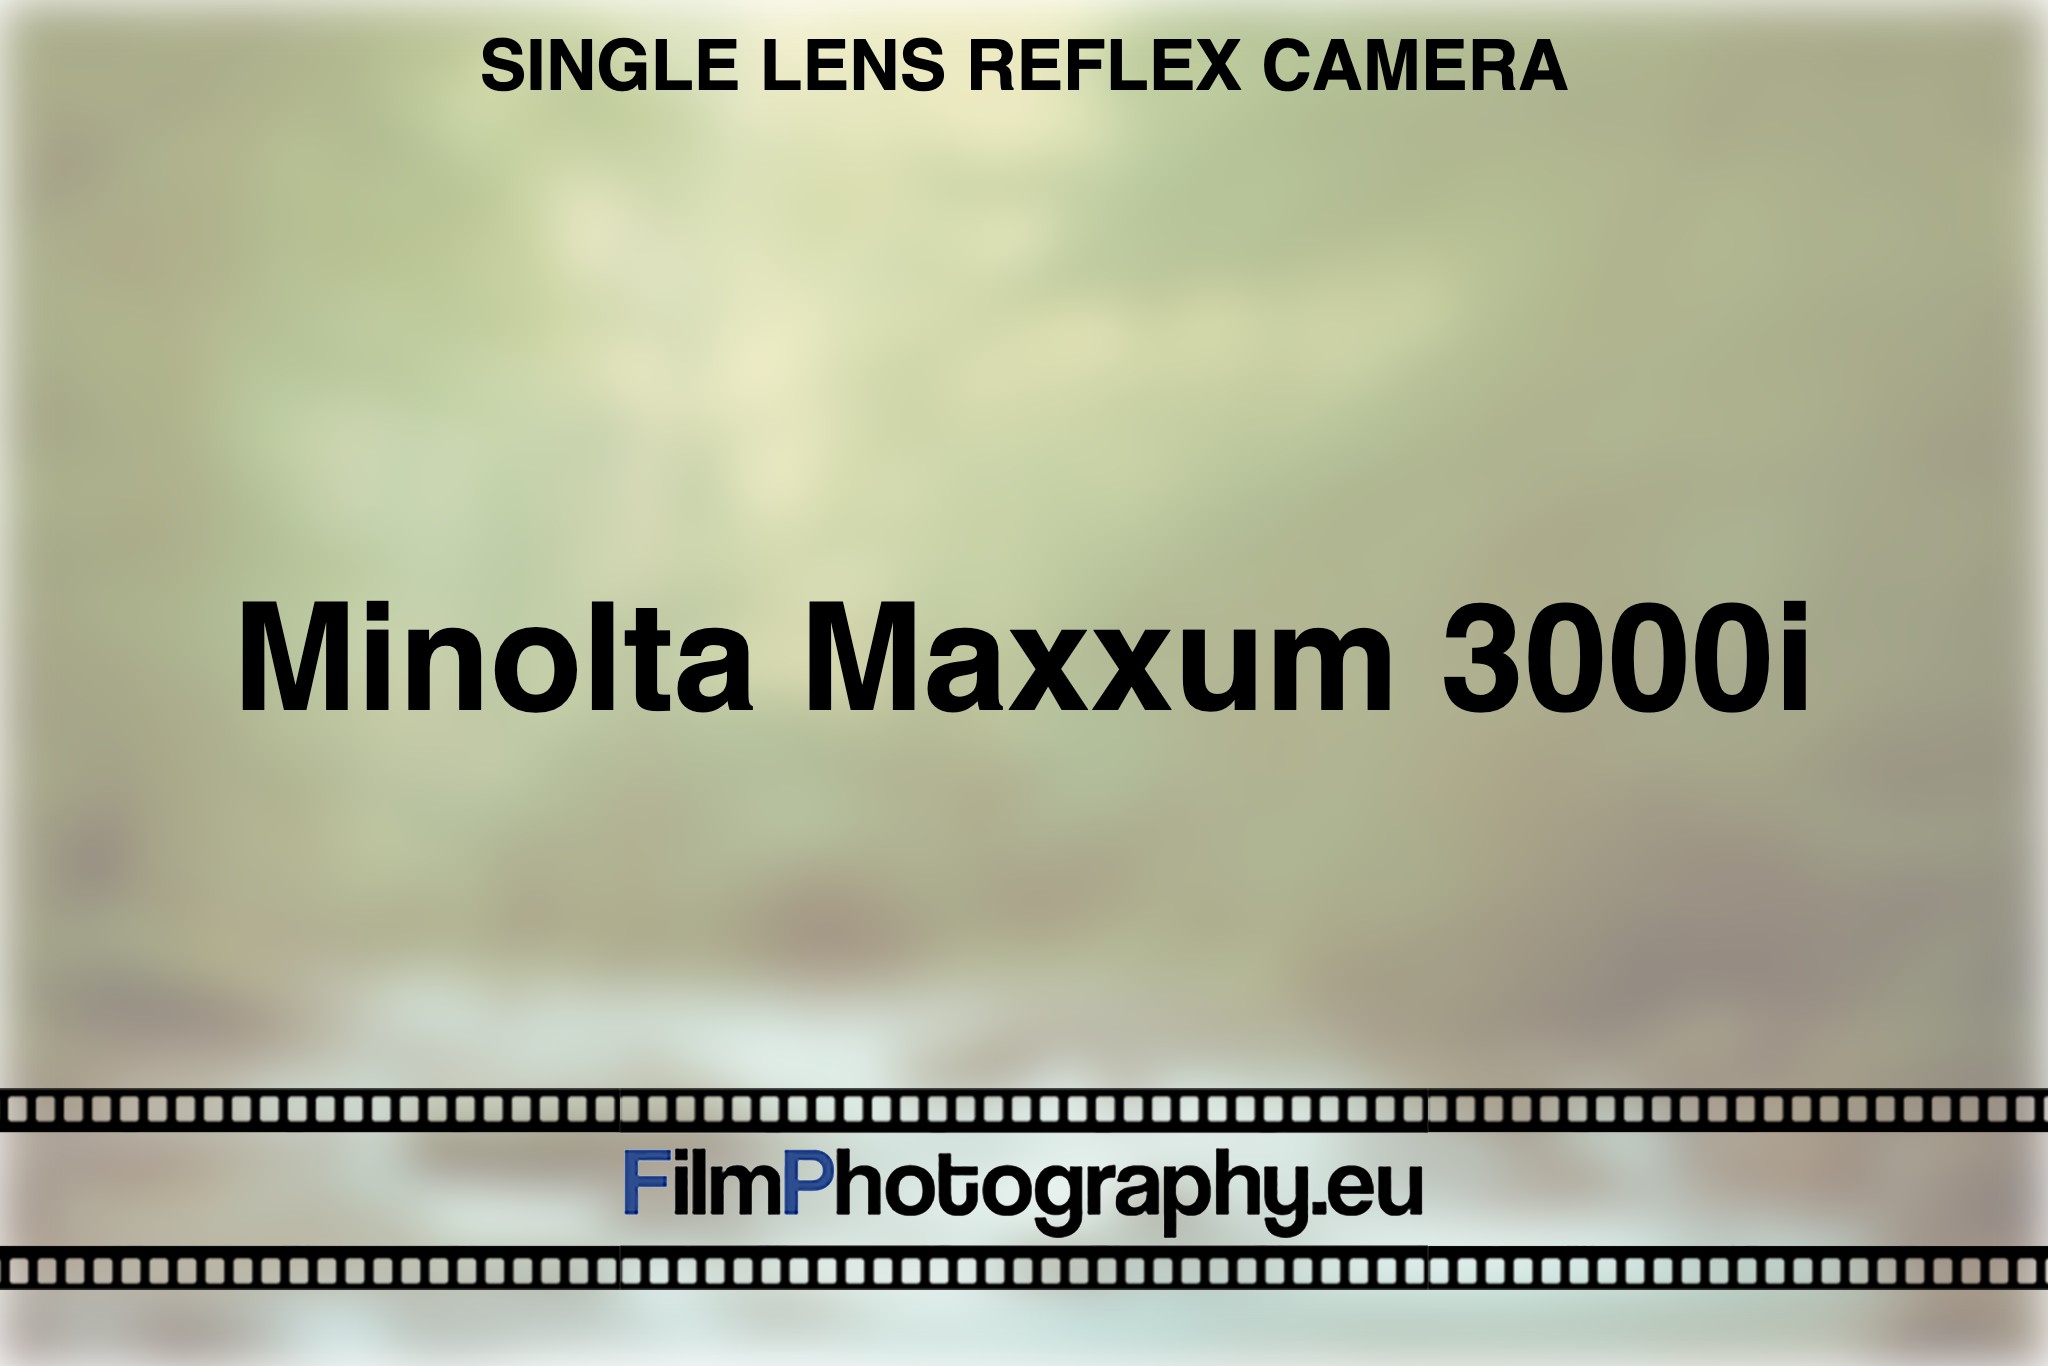 minolta-maxxum-3000i-single-lens-reflex-camera-bnv